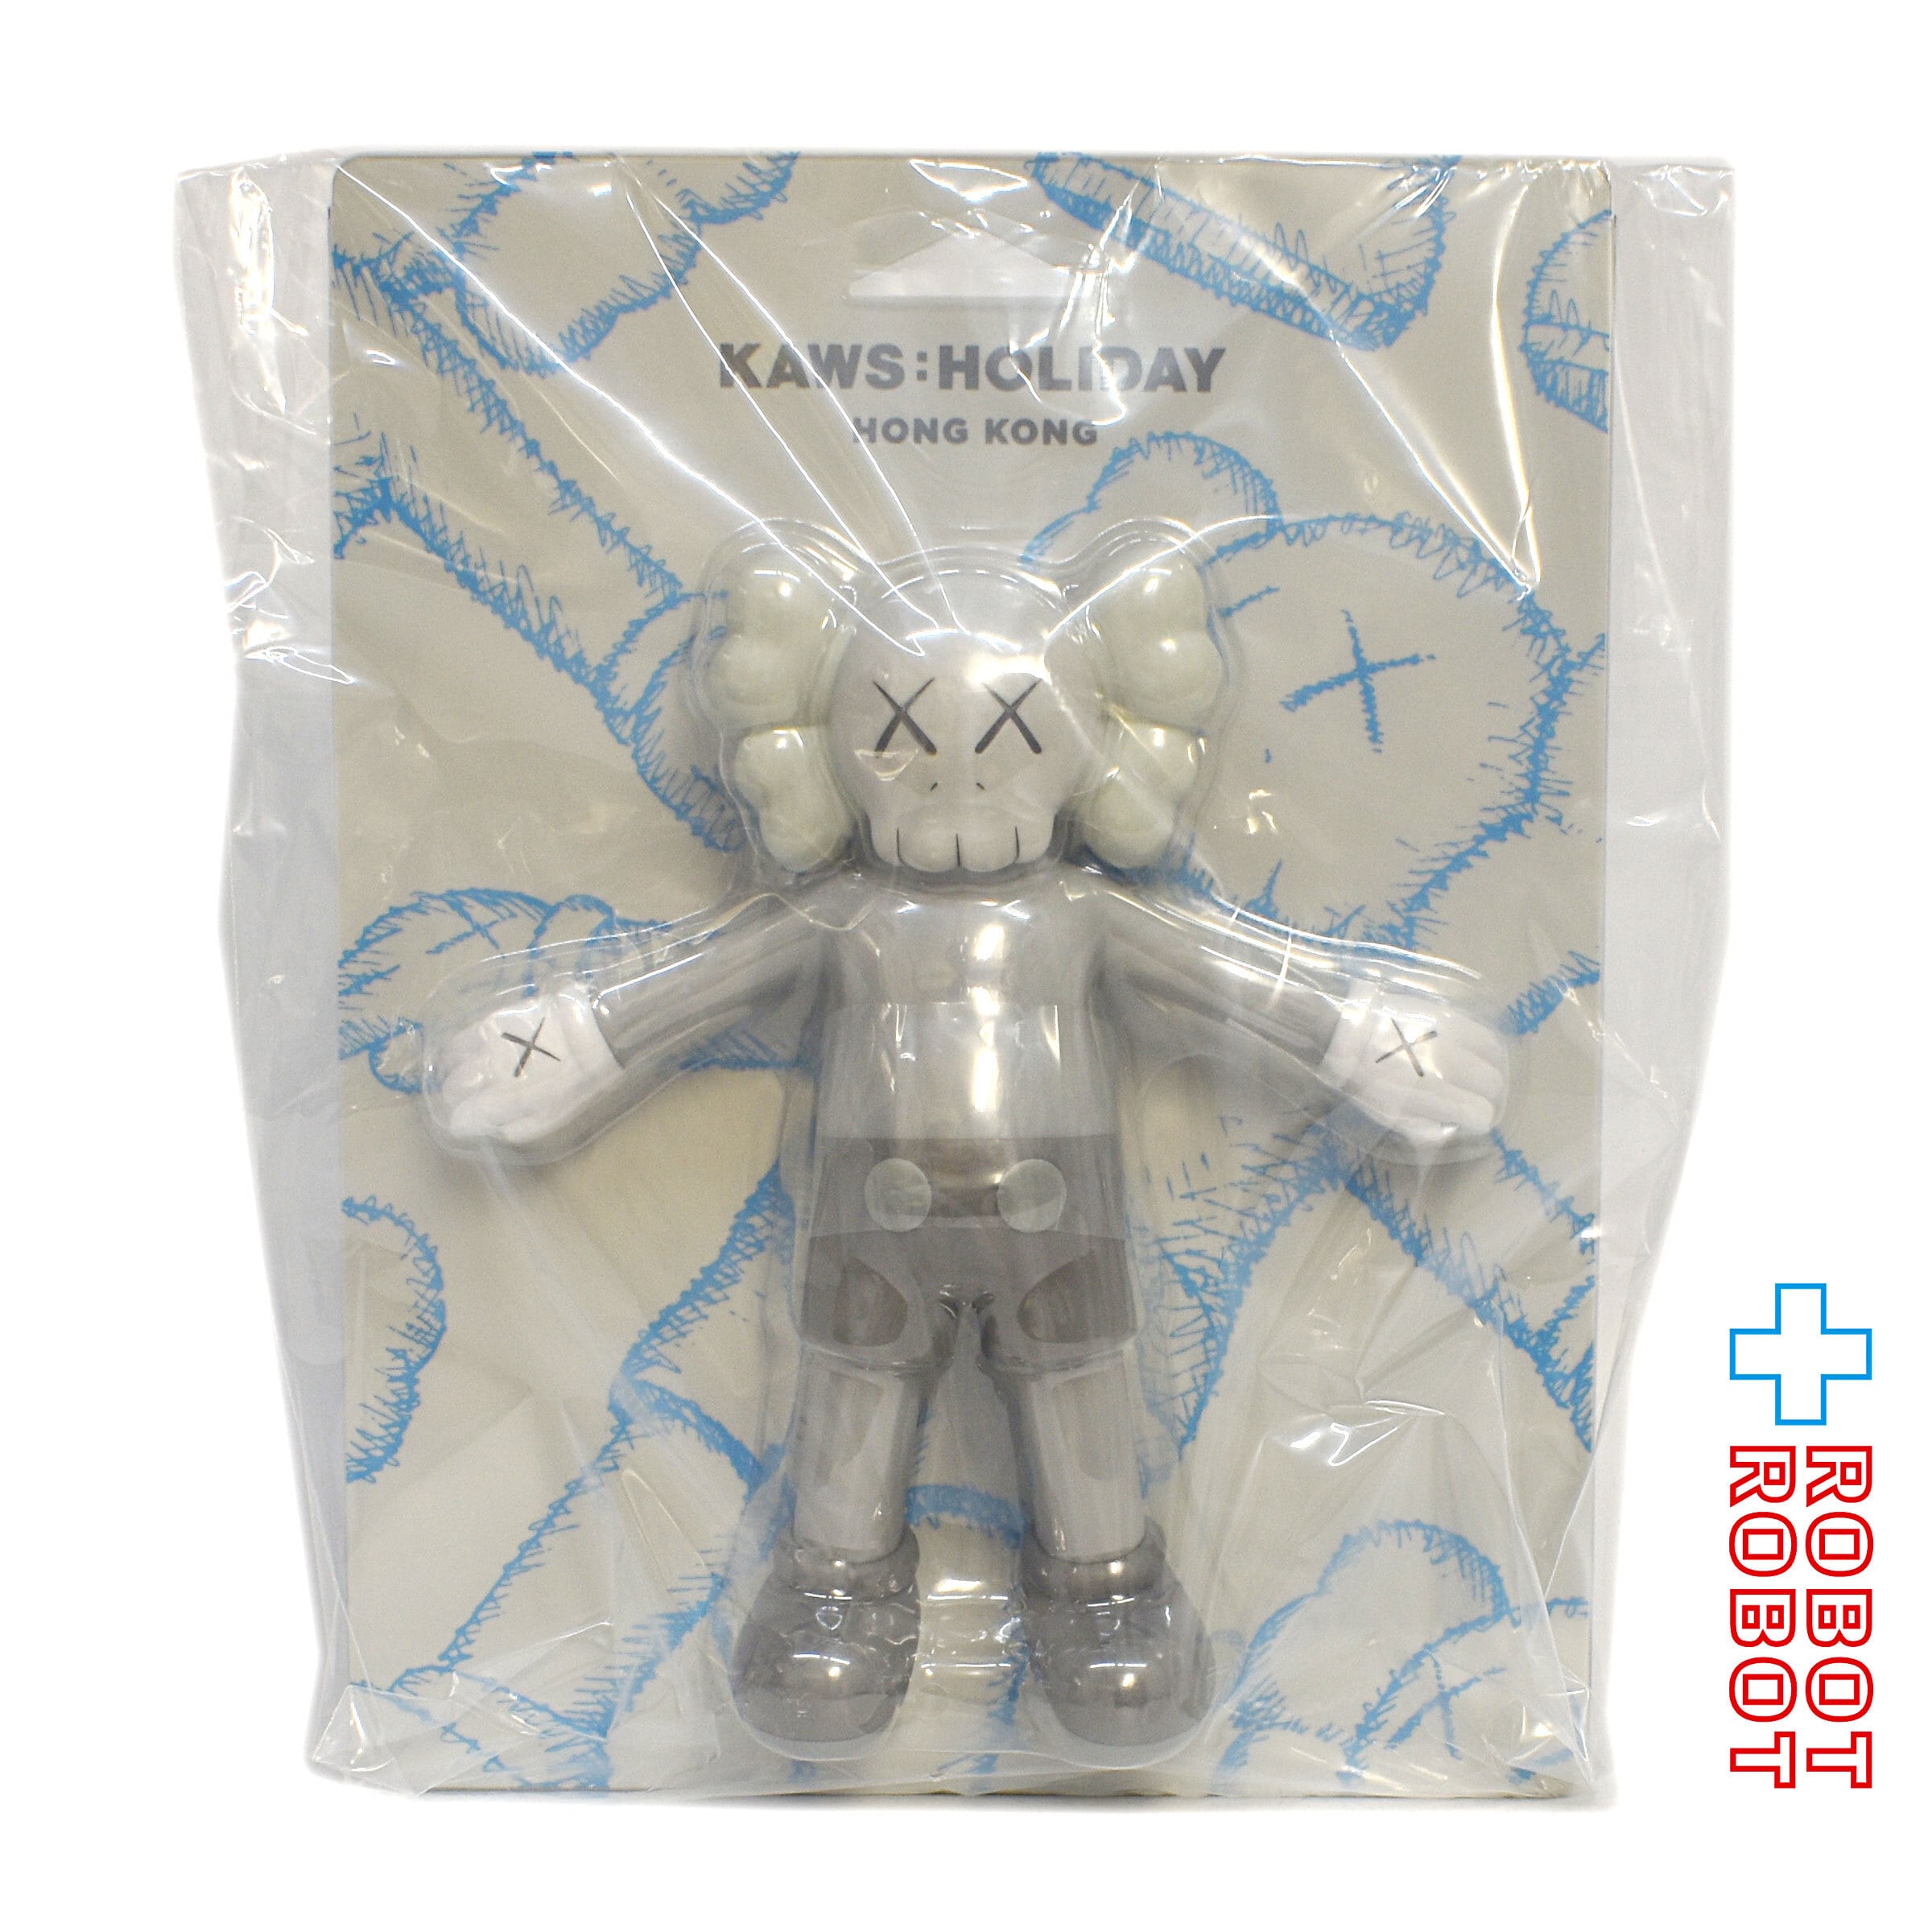 KAWS：HOLIDAY フィギュア Hong Kongカウズ ホビー おもちゃ